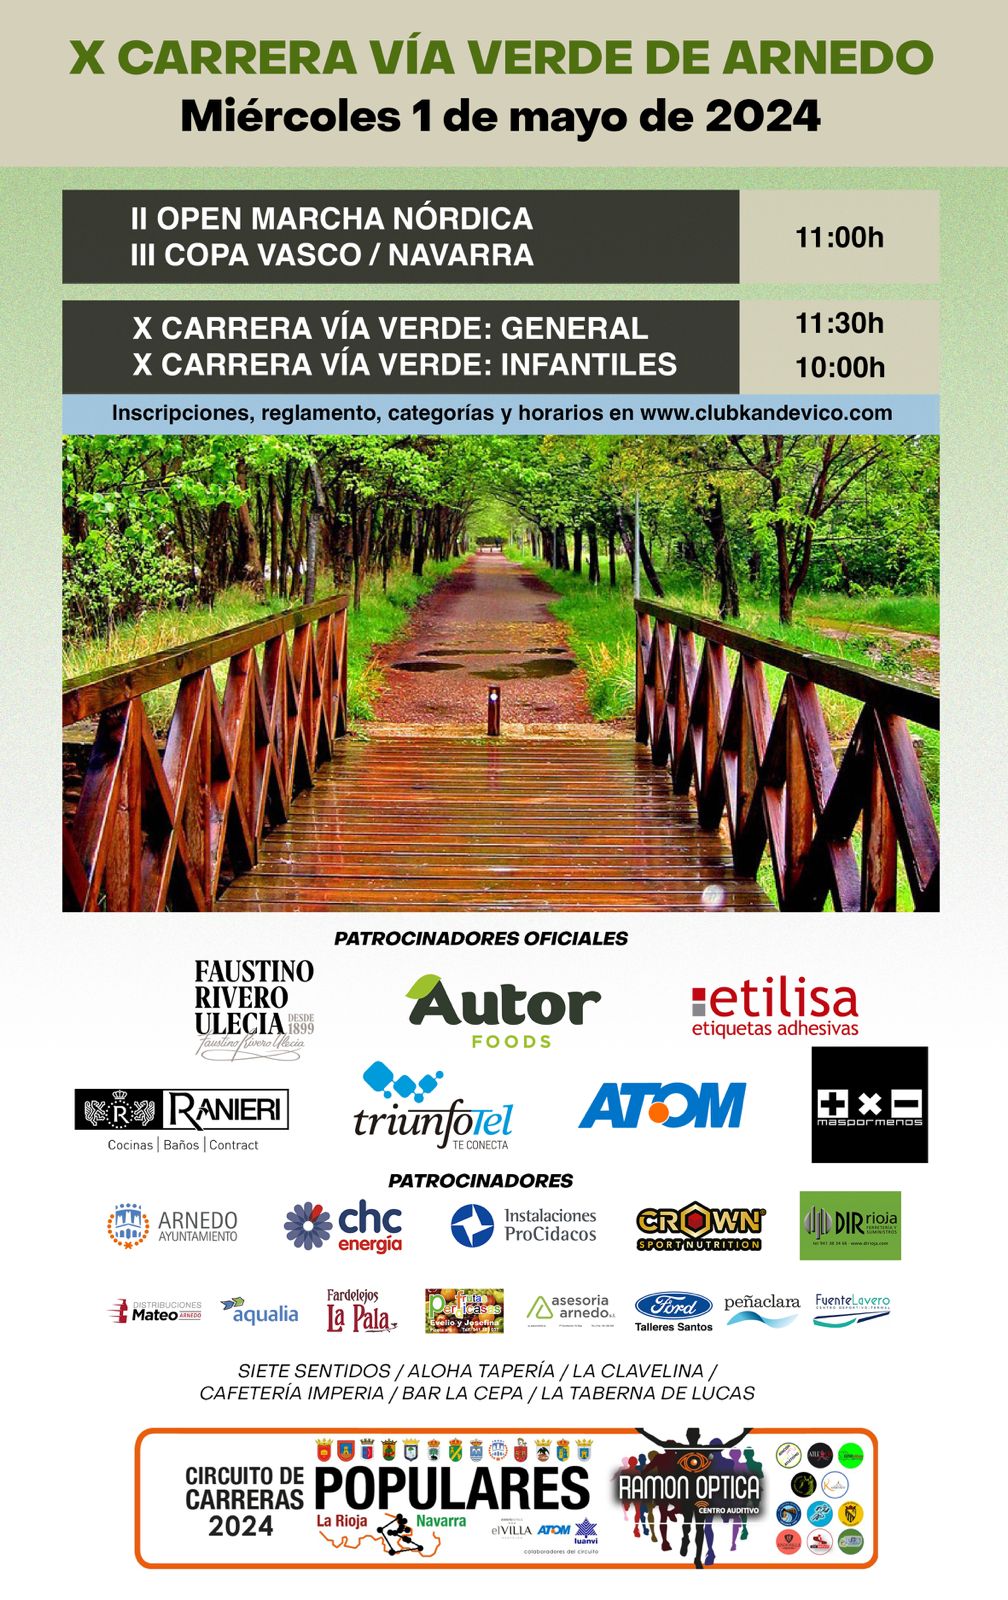 X Carrera Verde de Arnedo 2024 - II Open Marcha Nórdica Arnedo 2024 - III Copa Vasco-Navarra Marcha Nórdica 2024